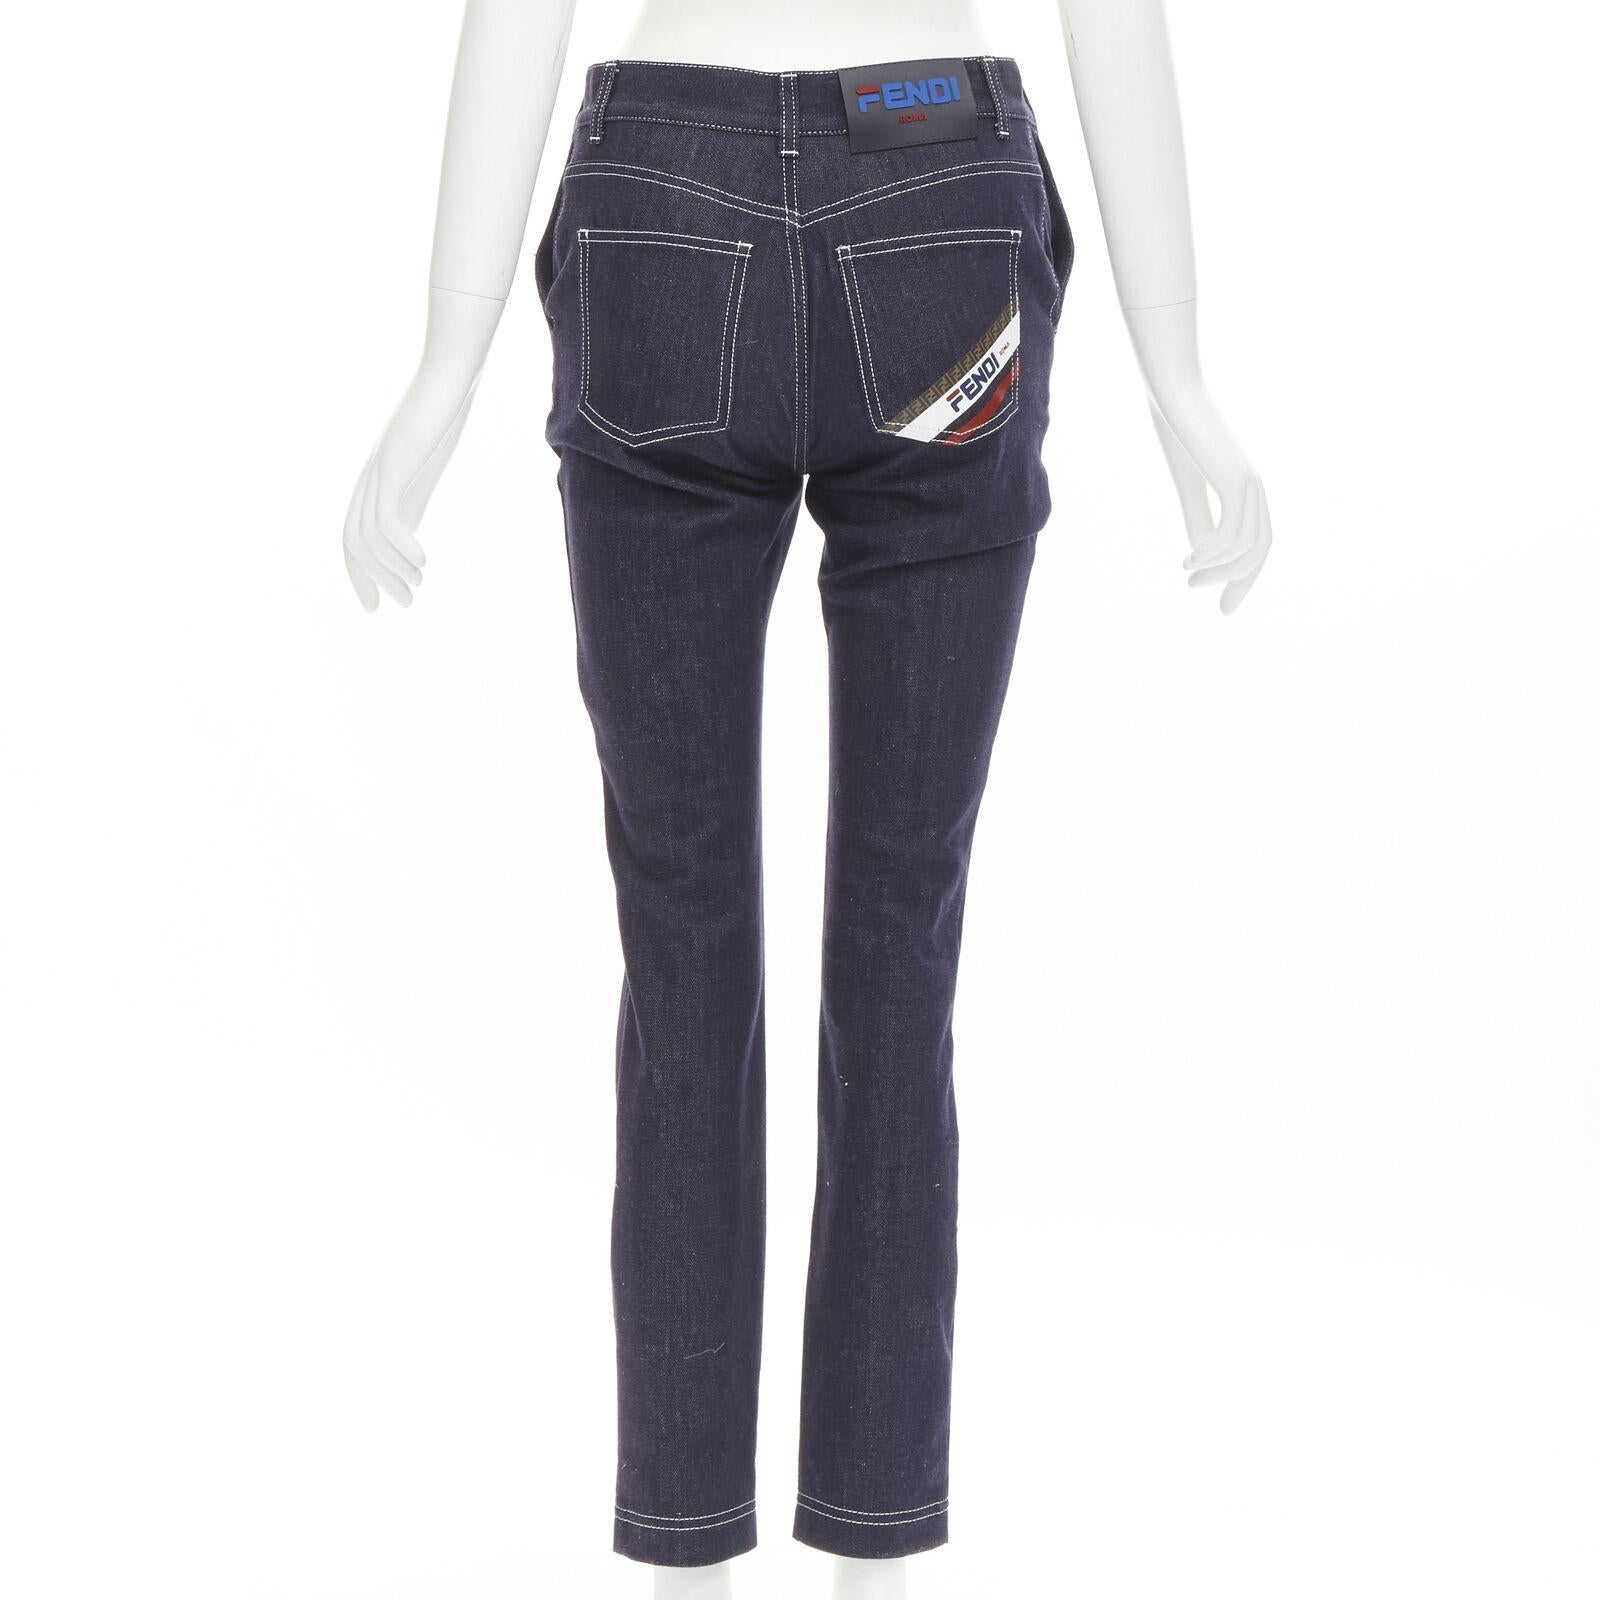 fendi jeans back pocket design